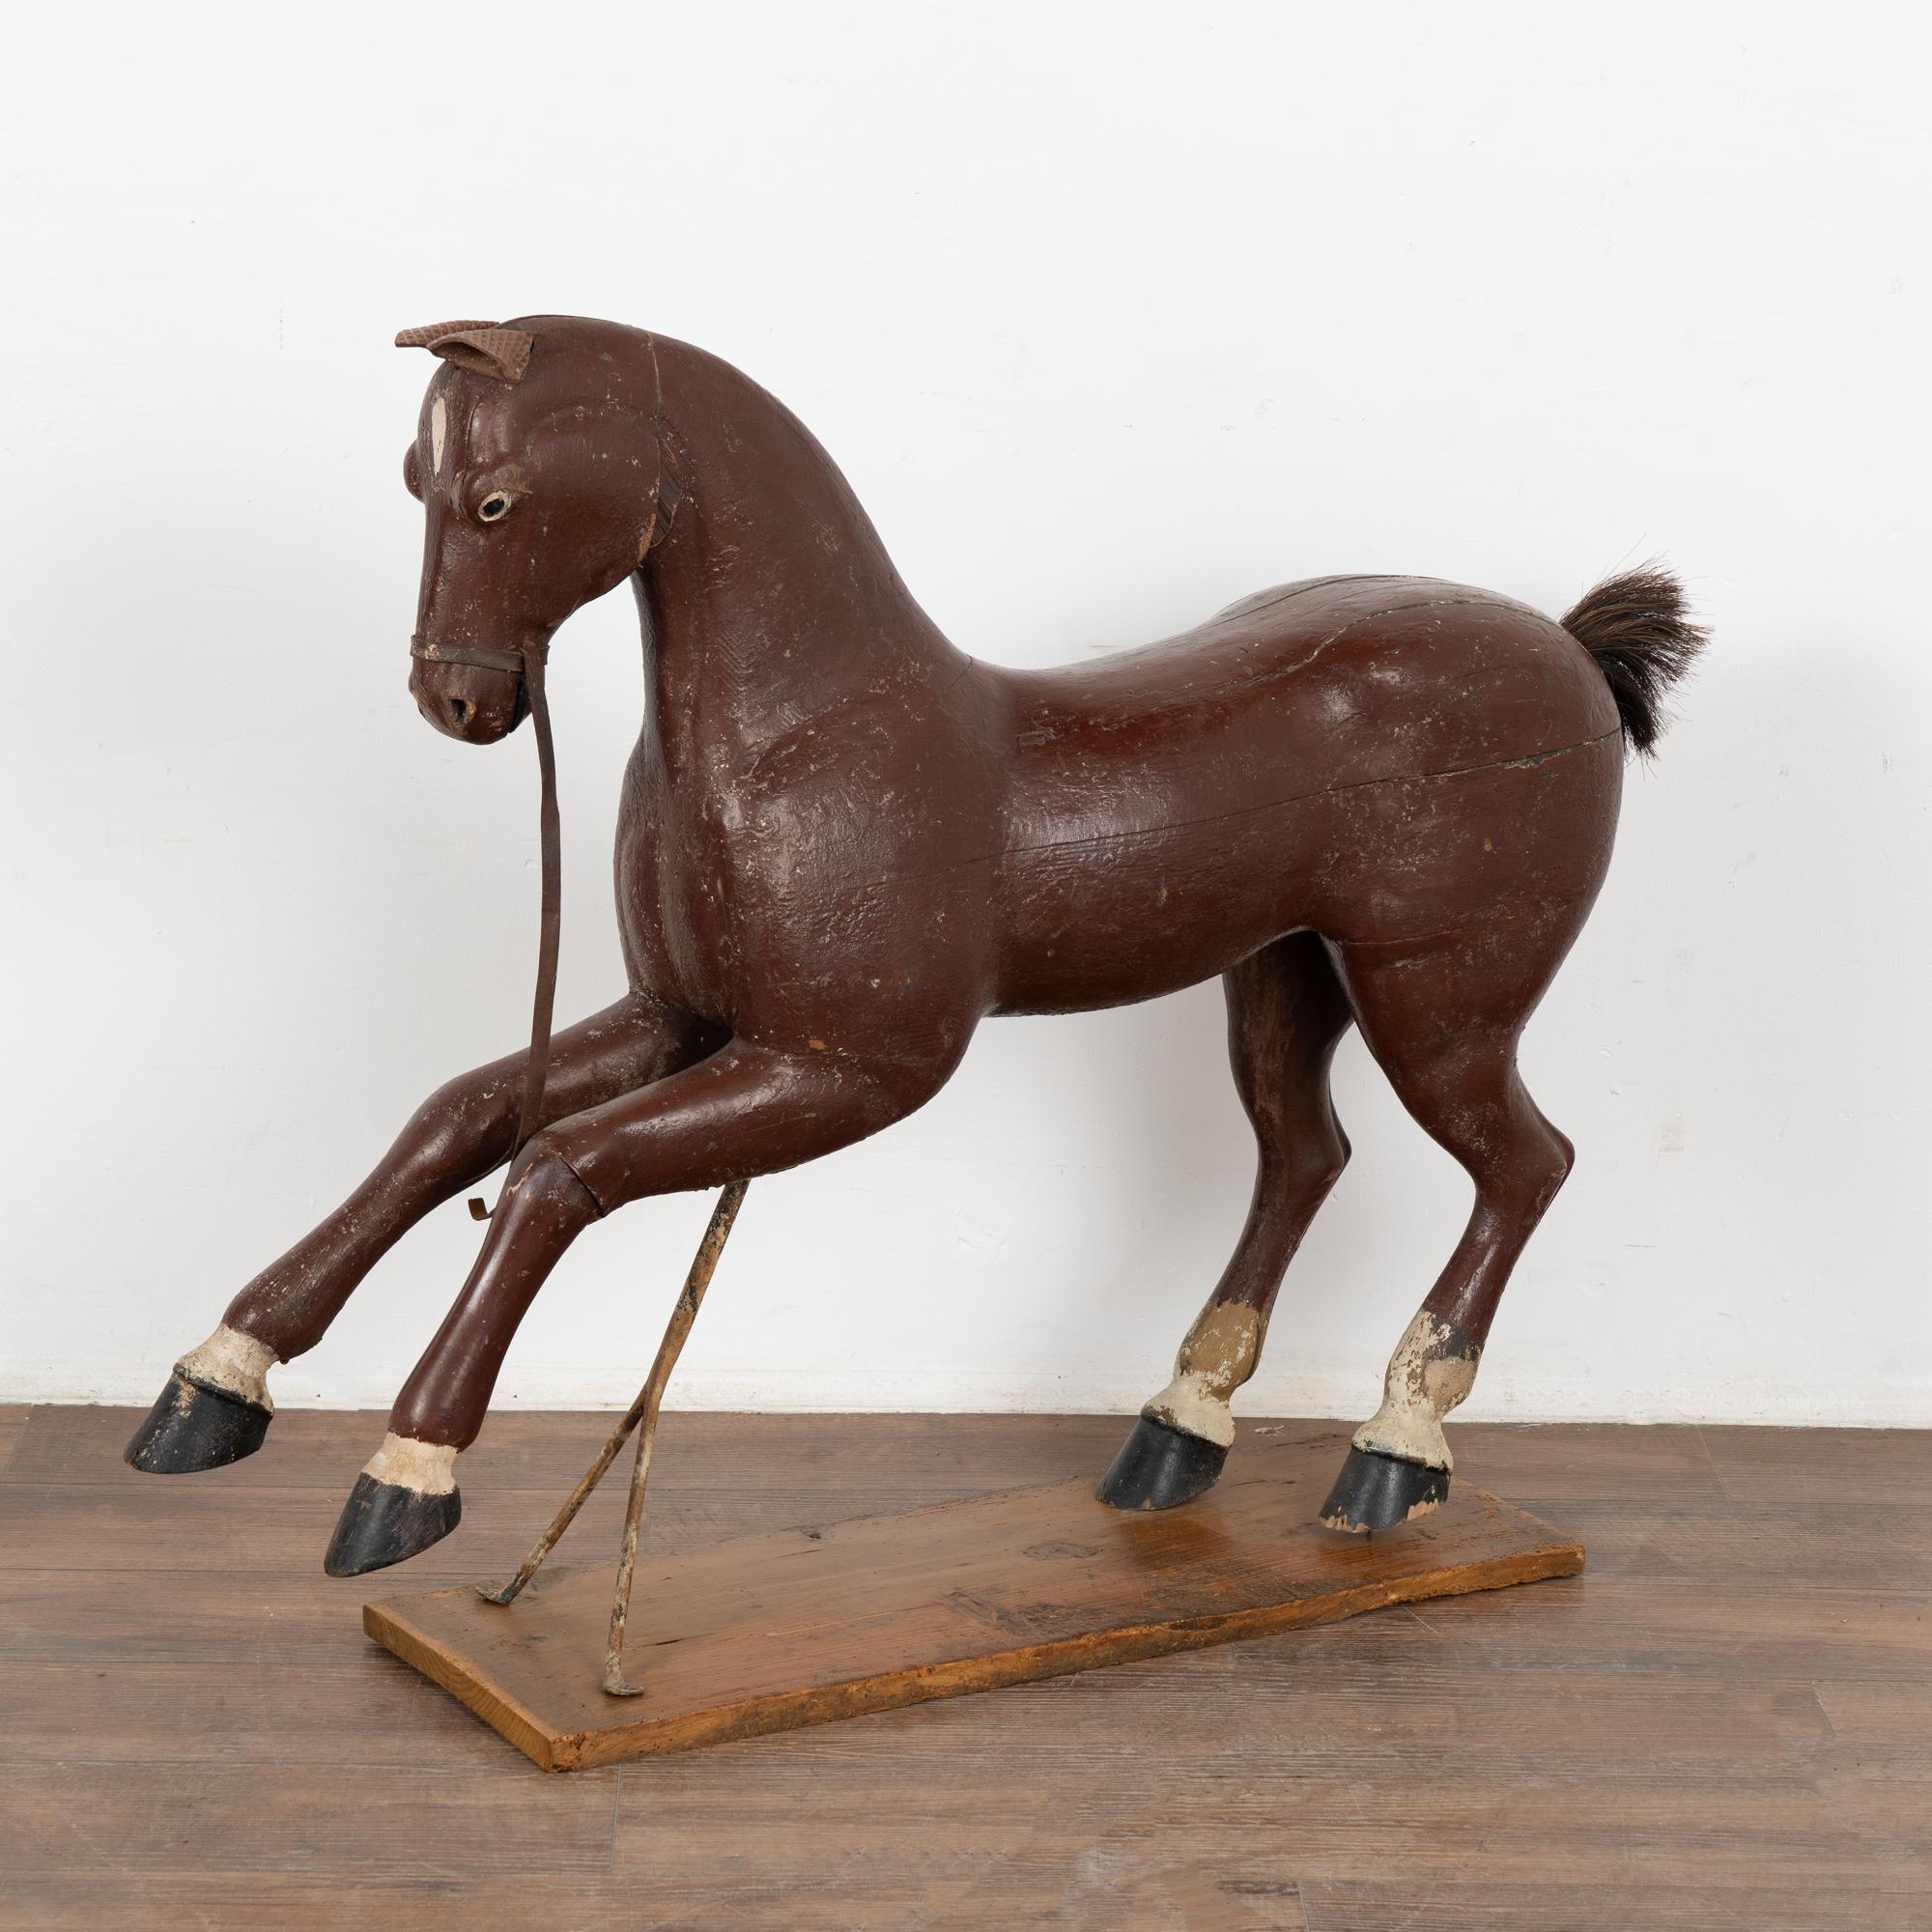 C'est l'aspect très usé qui fait tout l'attrait de ce cheval original peint et sculpté, avec son support en métal. 
La peinture marron/brique a été abîmée sur toute sa surface (et manque sous la queue). Les oreilles en cuir, la crinière manquante et